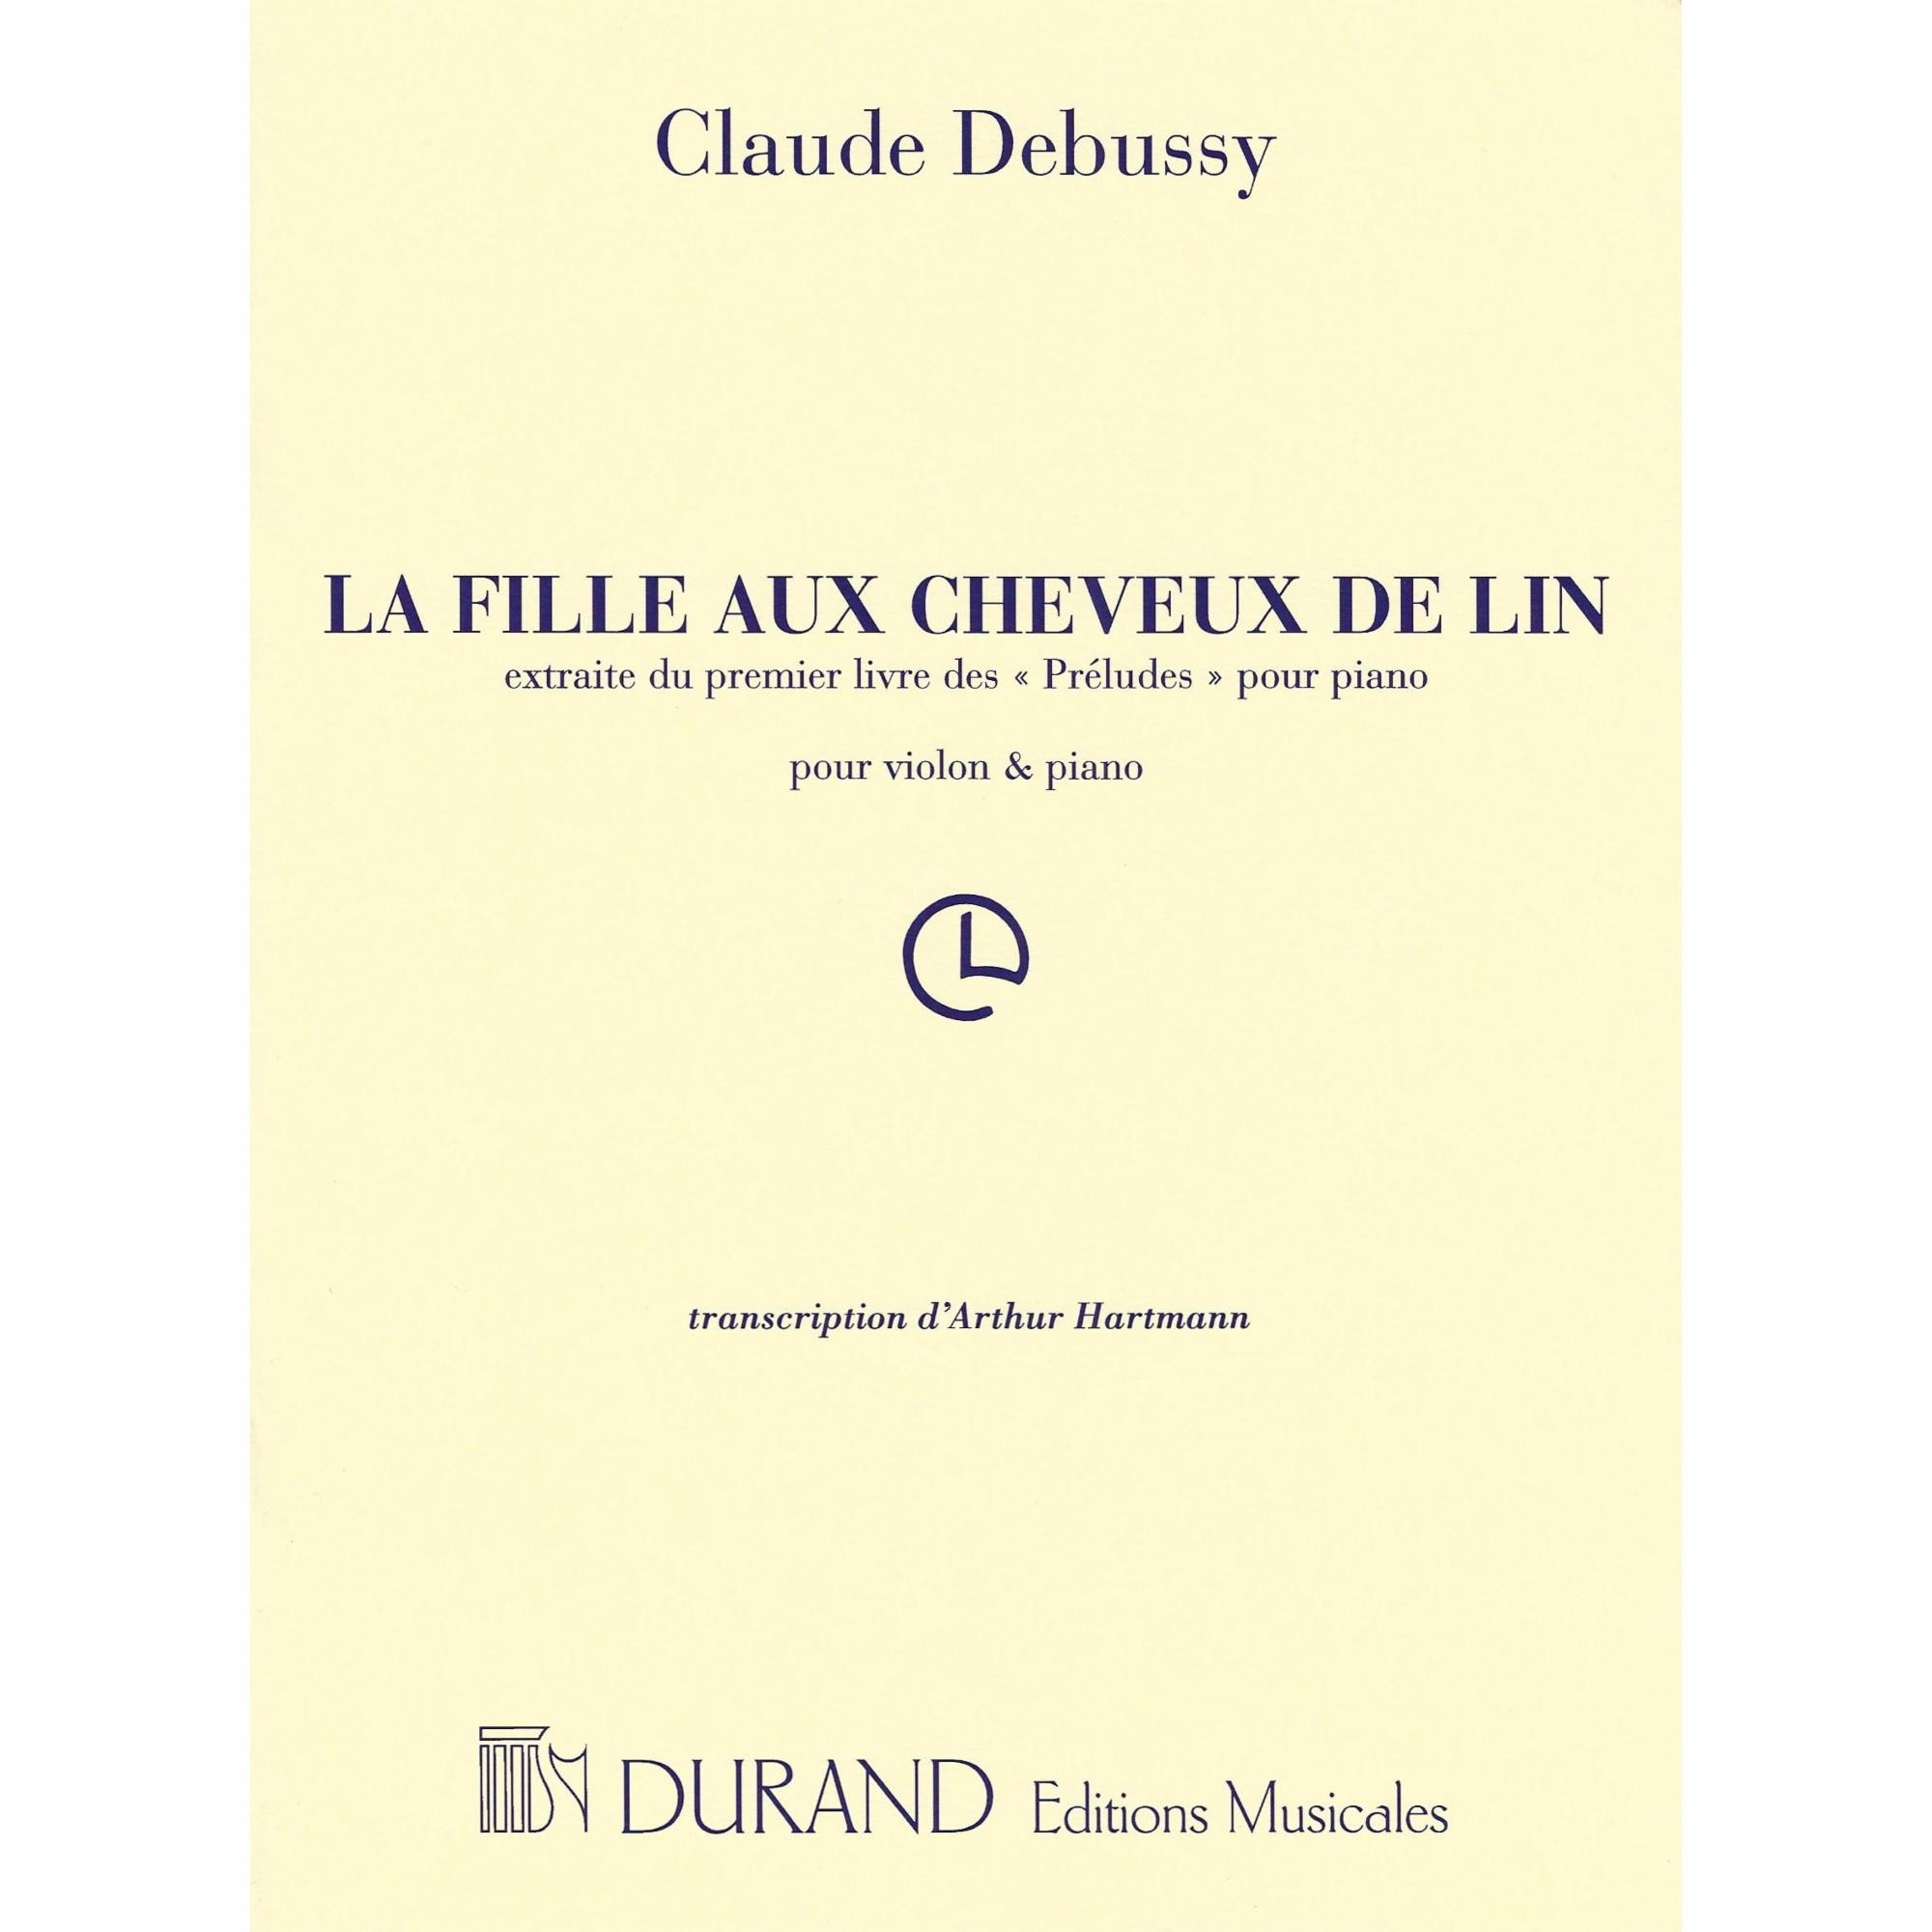 Debussy -- La fille aux cheveux de lin for Violin and Piano